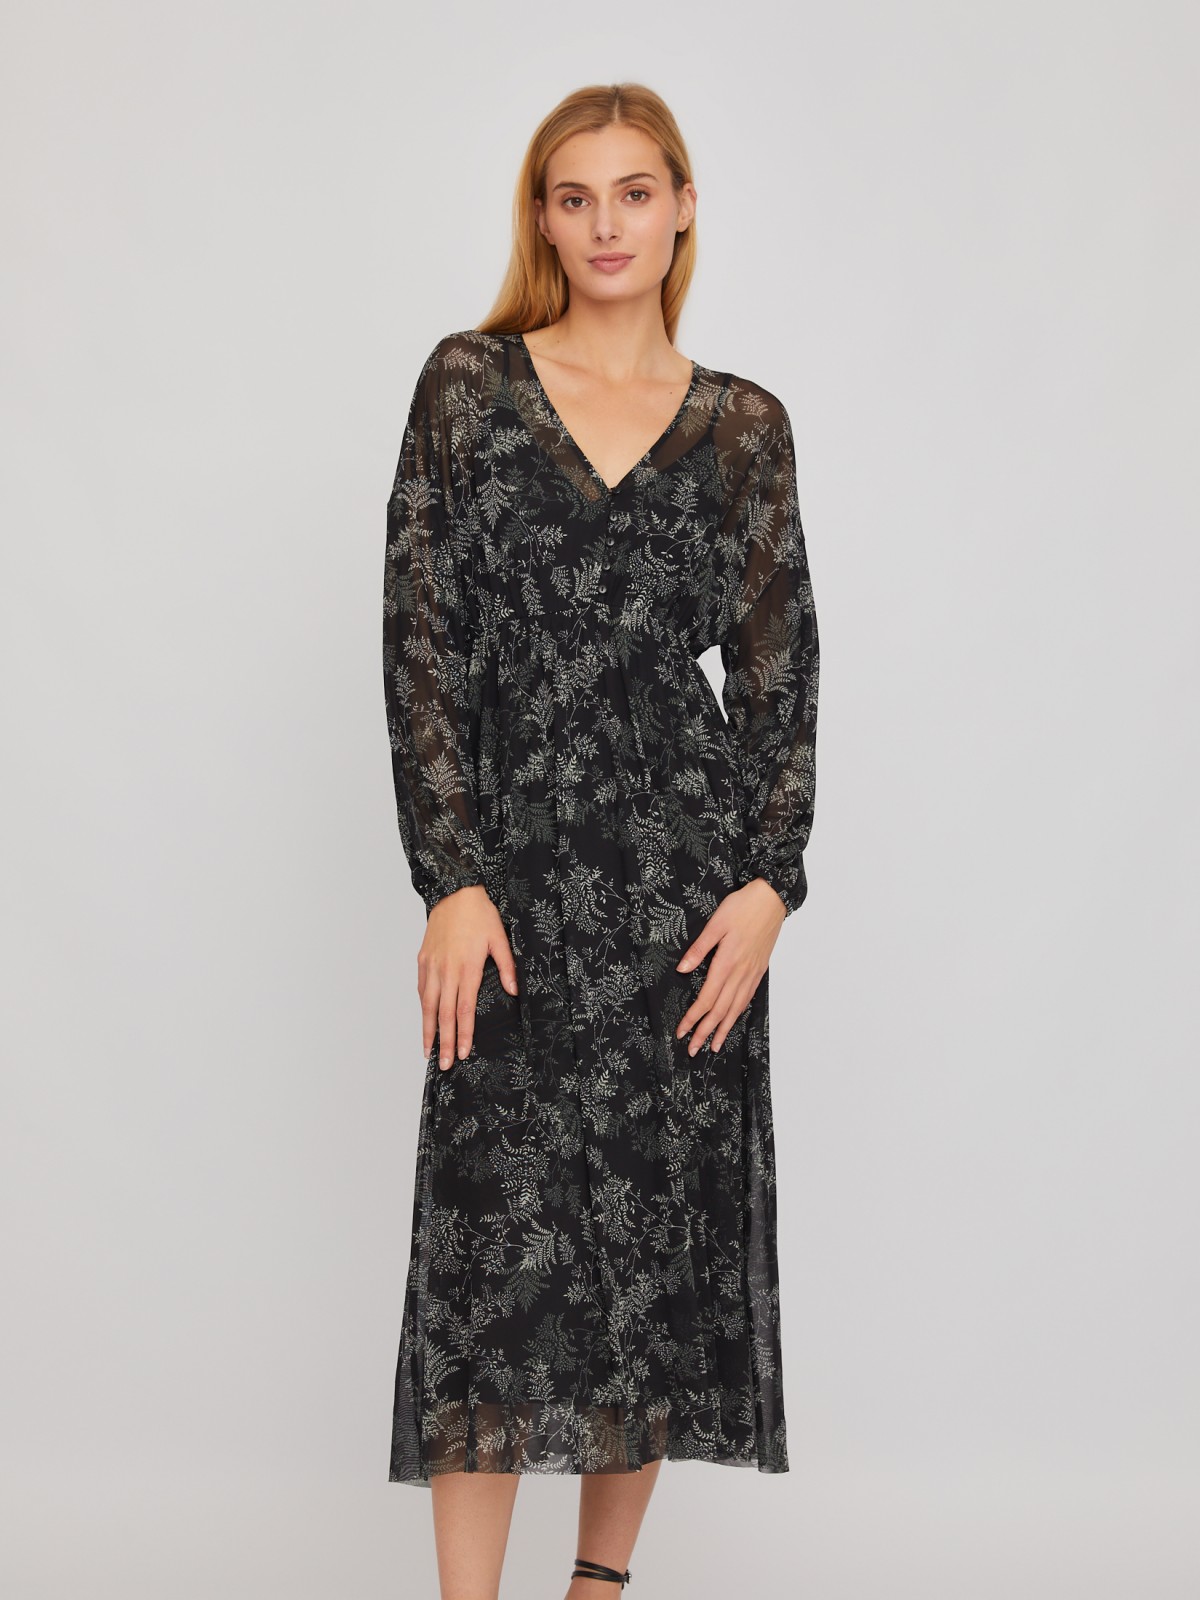 Двойное ярусное платье из сетки с принтом и нижней комбинации zolla 024118159131, цвет черный, размер S